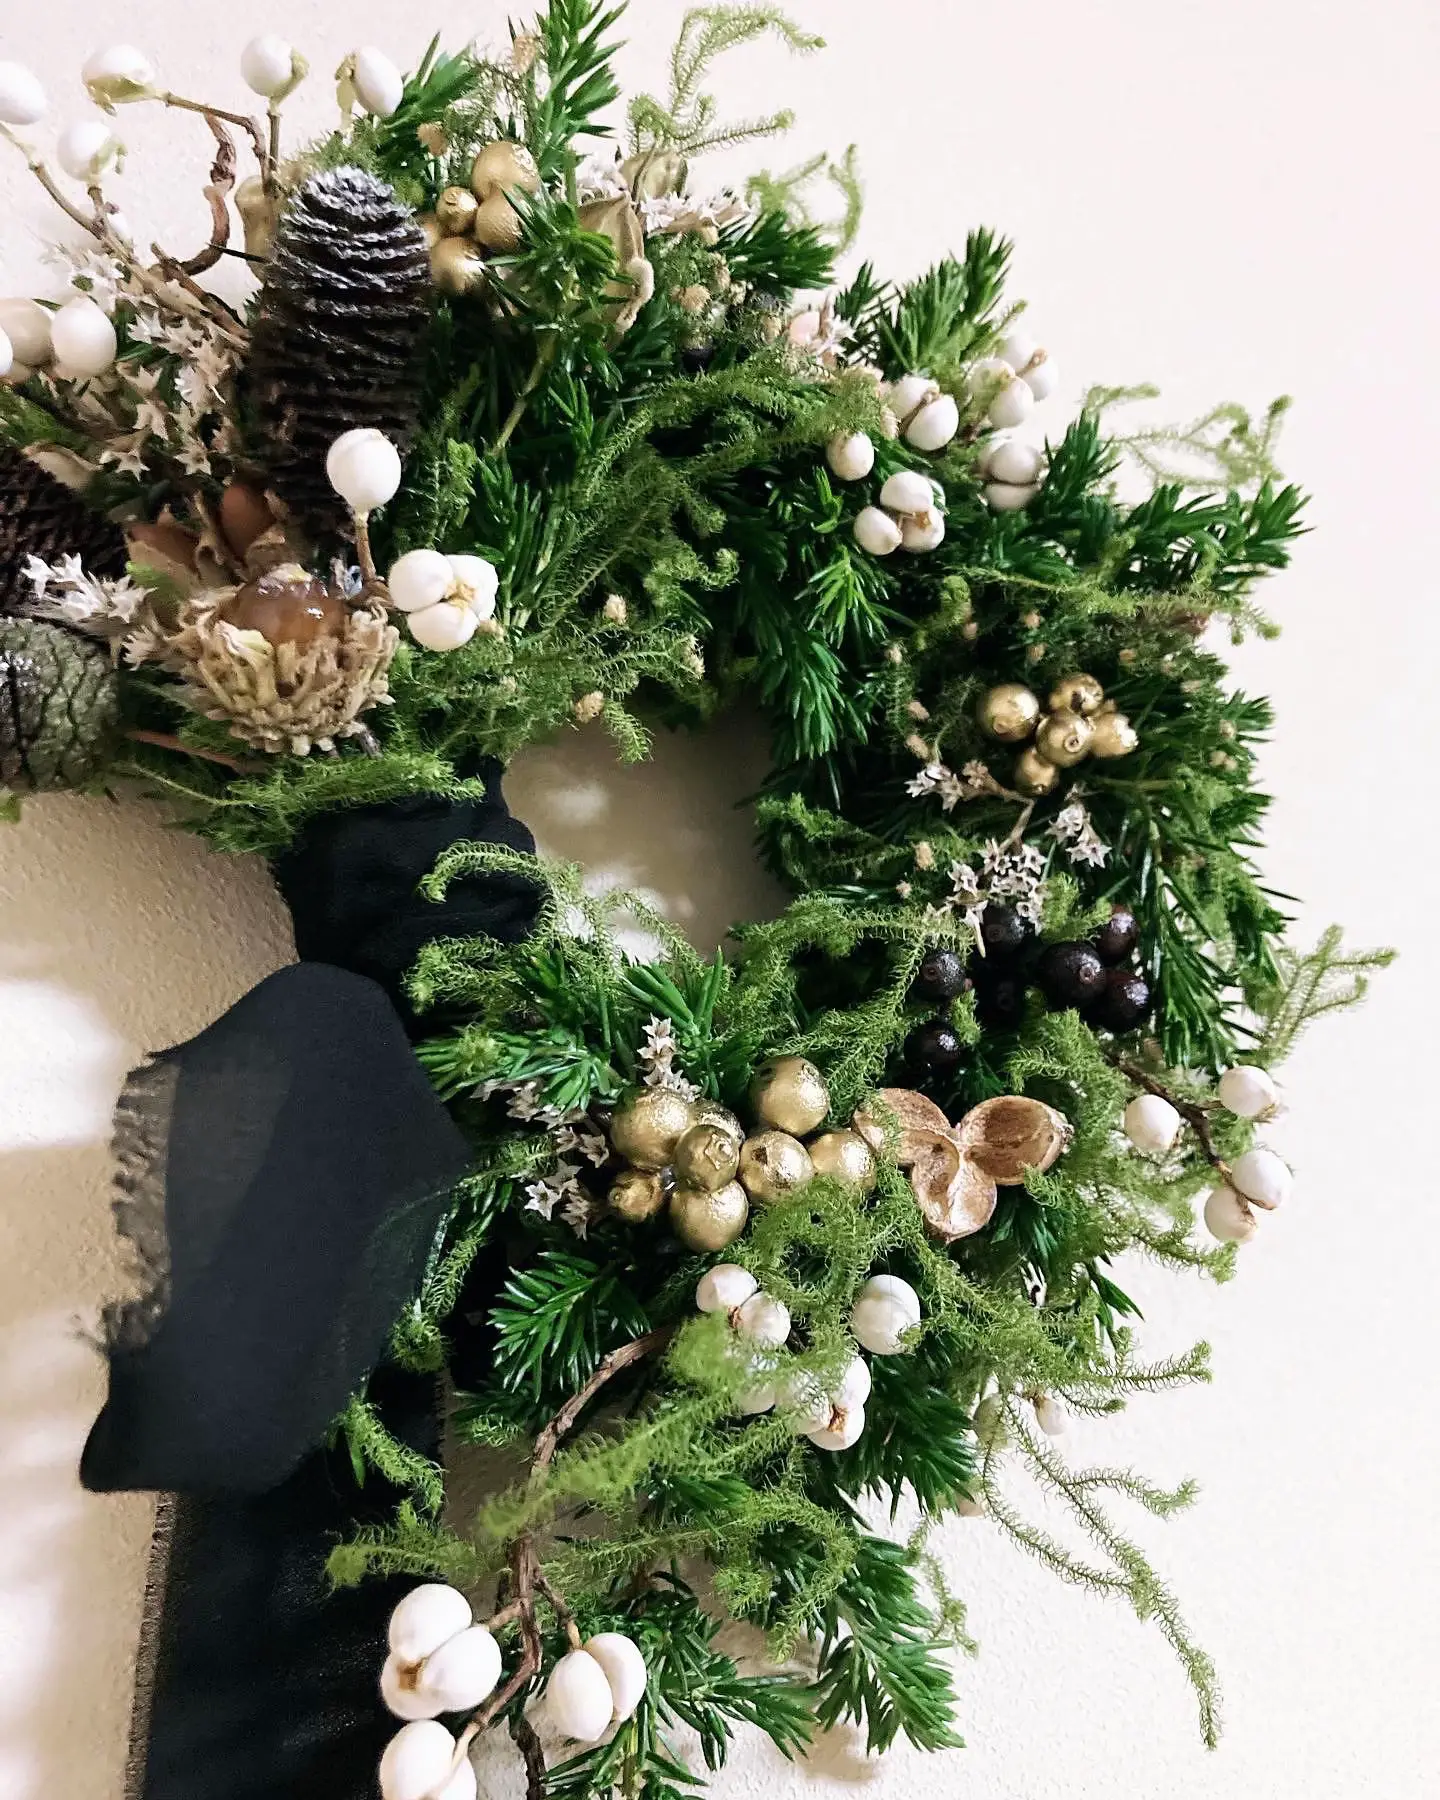 ꫛꫀꪝ✧‧˚生花をたっぷり使ったお洒落なクリスマス飾り♩壁飾り